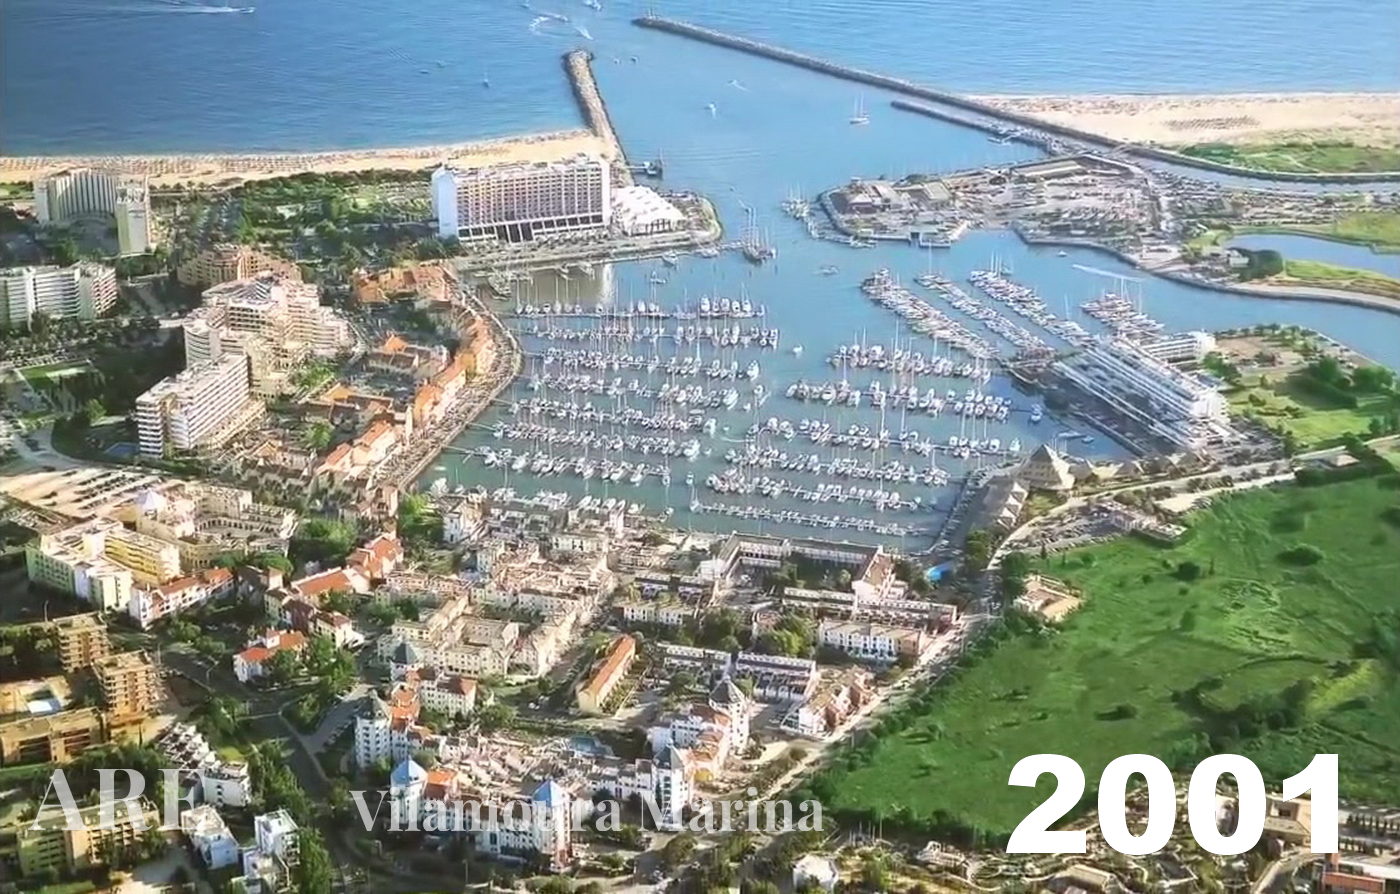 Una vista aérea de la Marina de Vilamoura tomada en 2001.